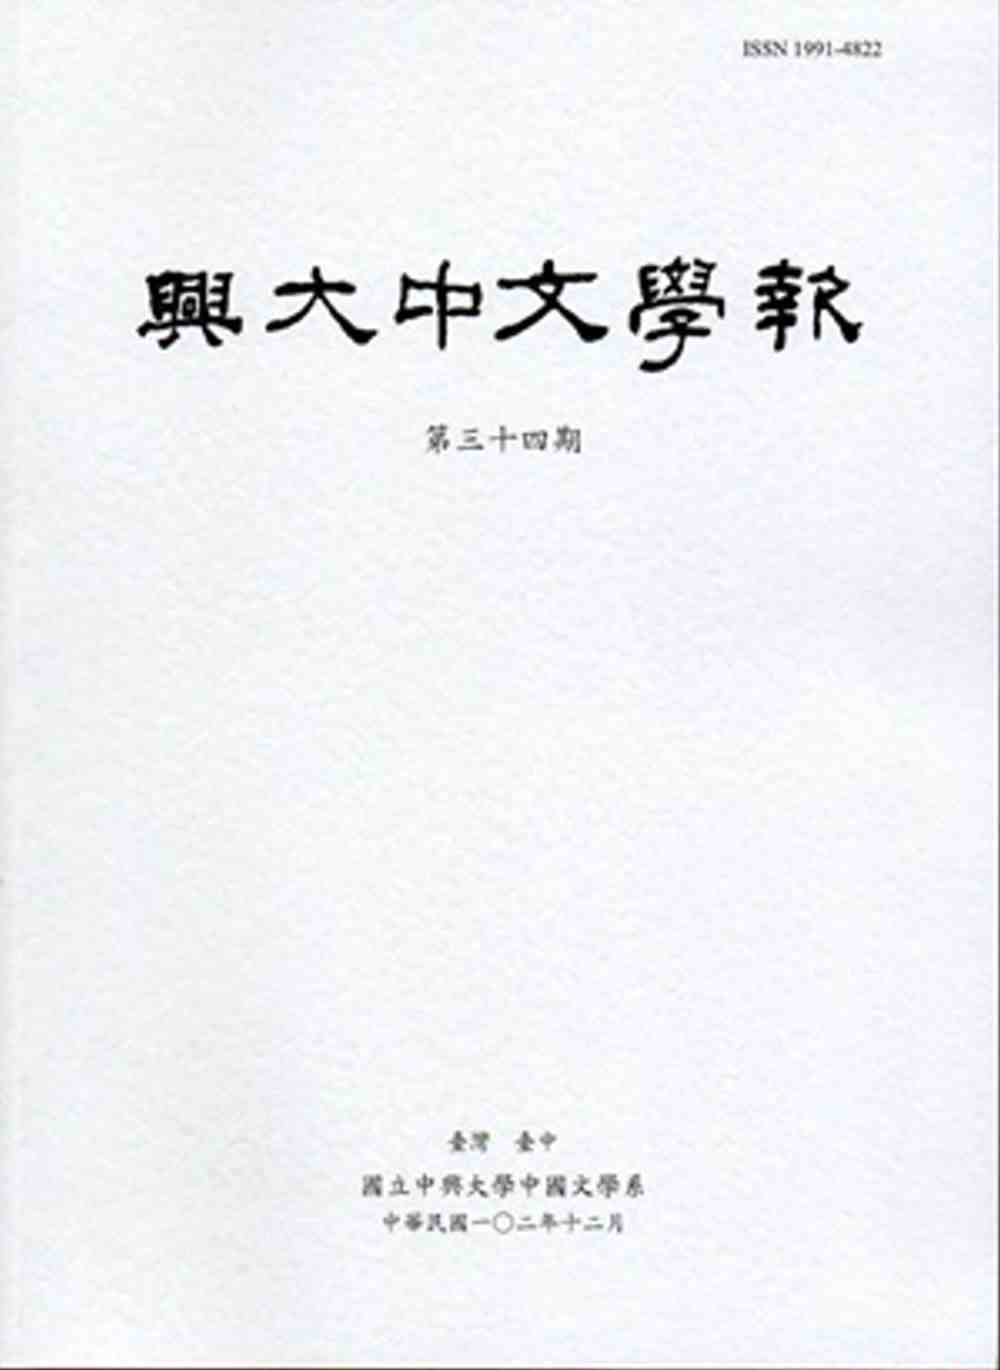 興大中文學報34期(102年12月)